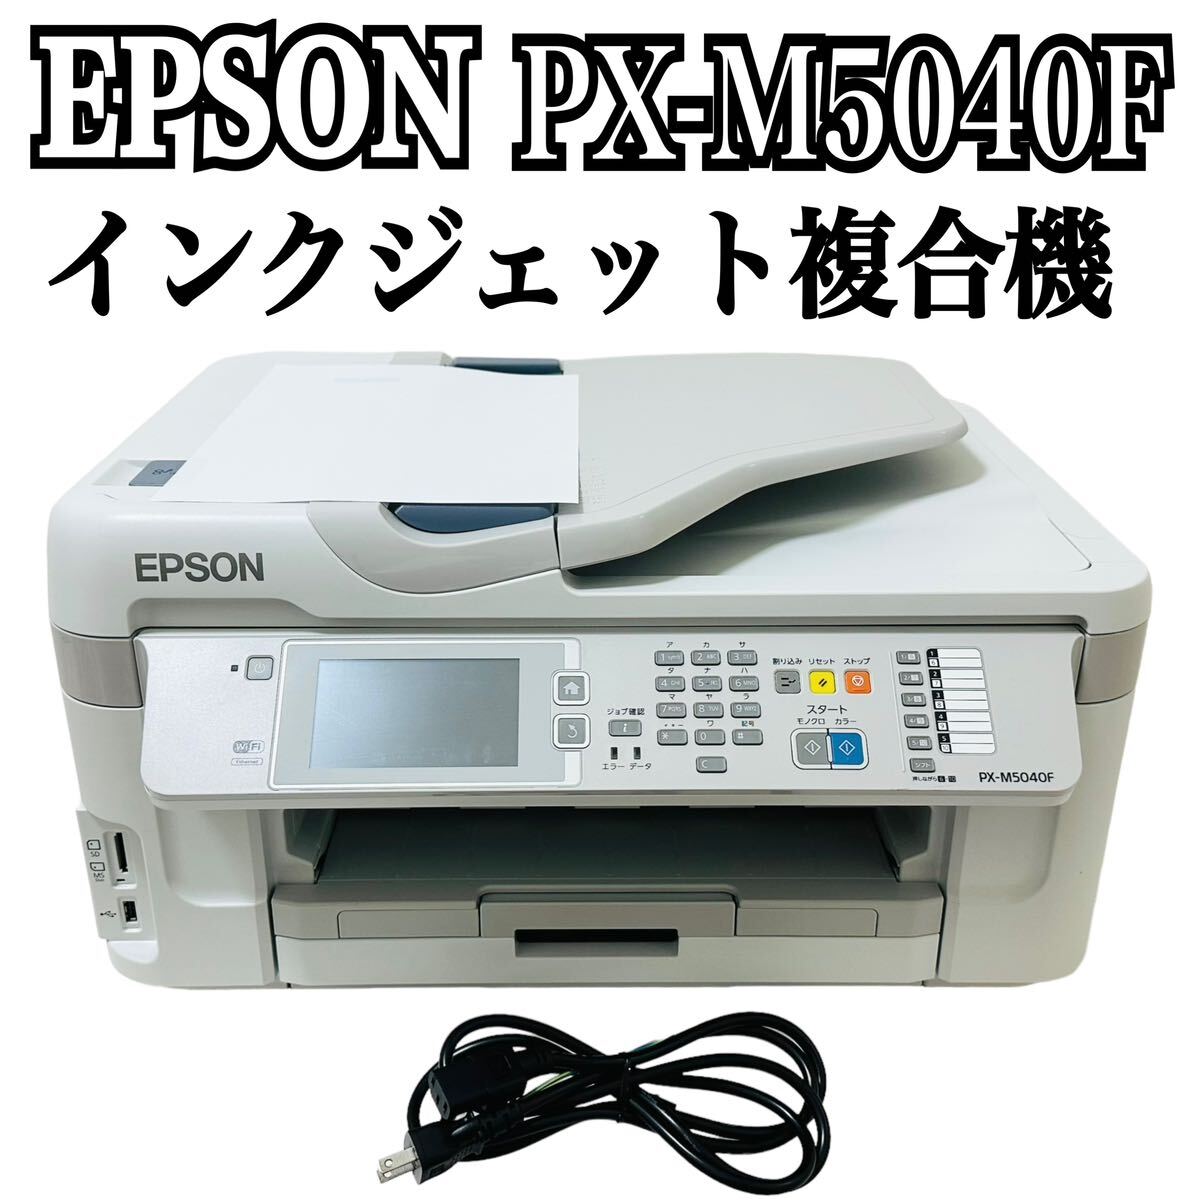 ★ 人気商品 ★ EPSON エプソン インクジェット複合機 PX-M5040F インクジェット プリンター A3 複合機 ビジネスプリンター カセット A4の画像1